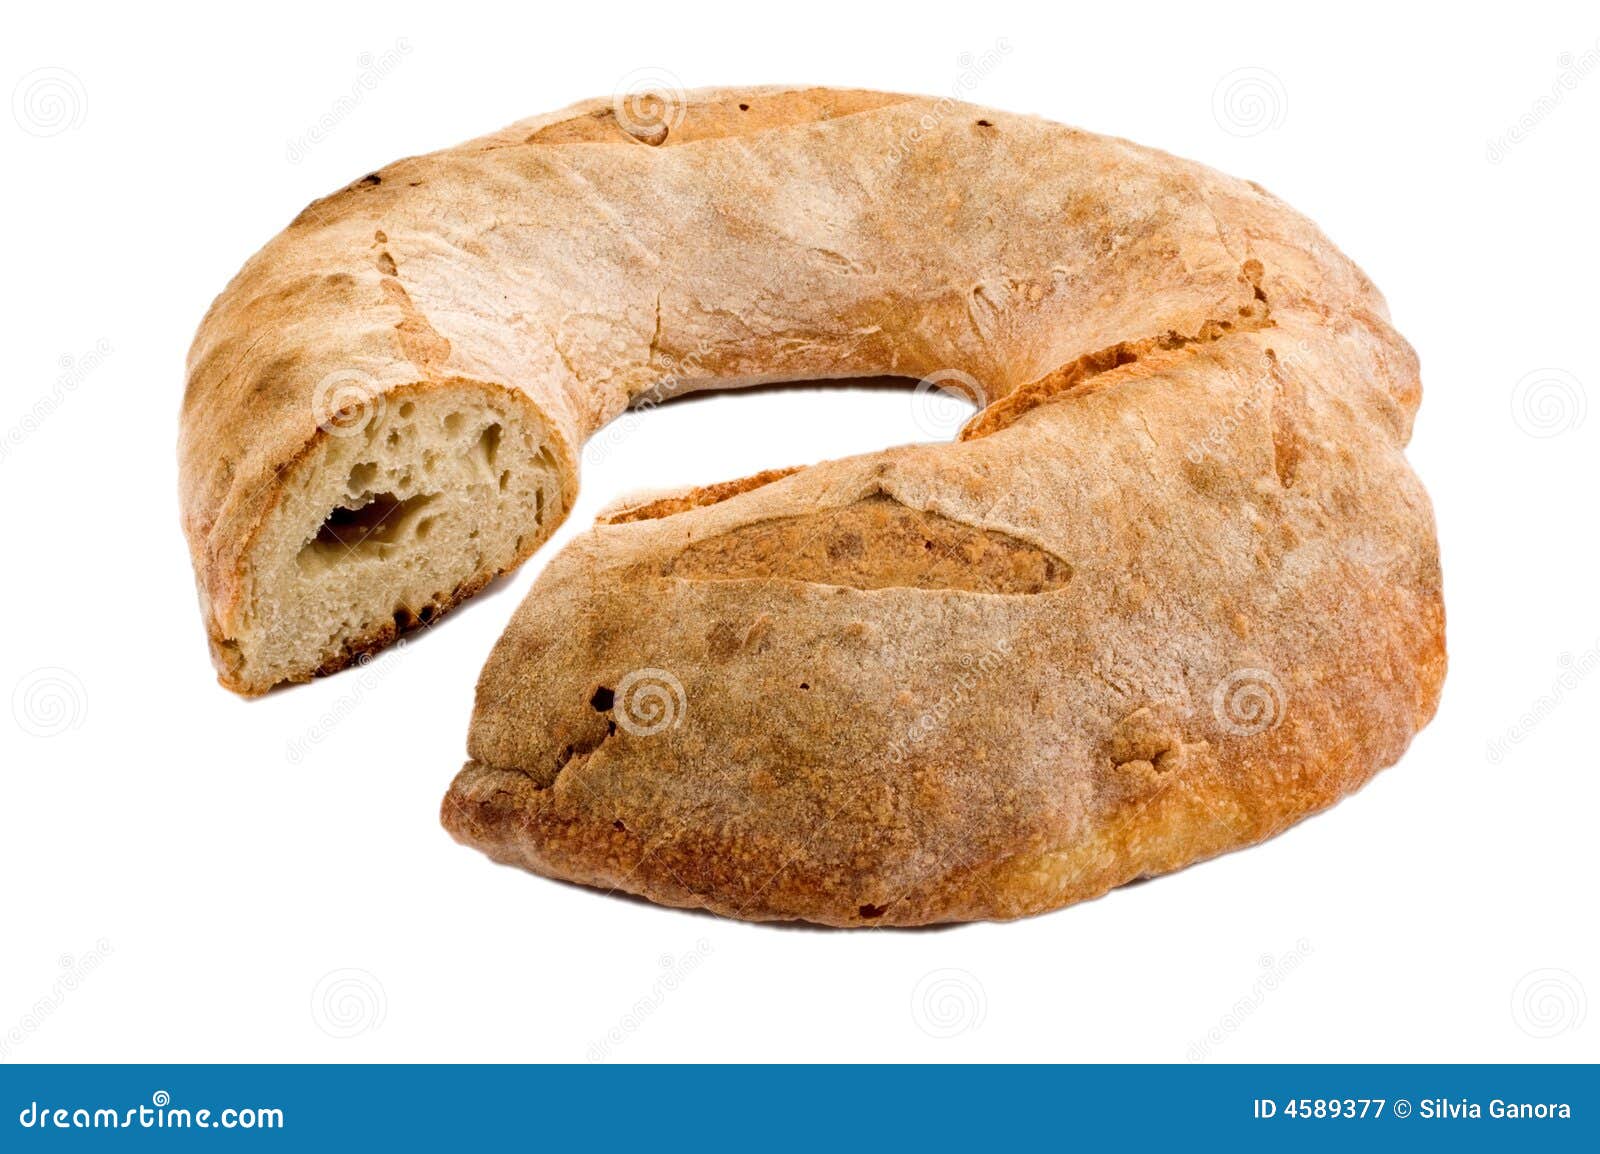 Italian Lard Bread | Italian bread recipes, Lard bread recipe, Bread  recipes homemade